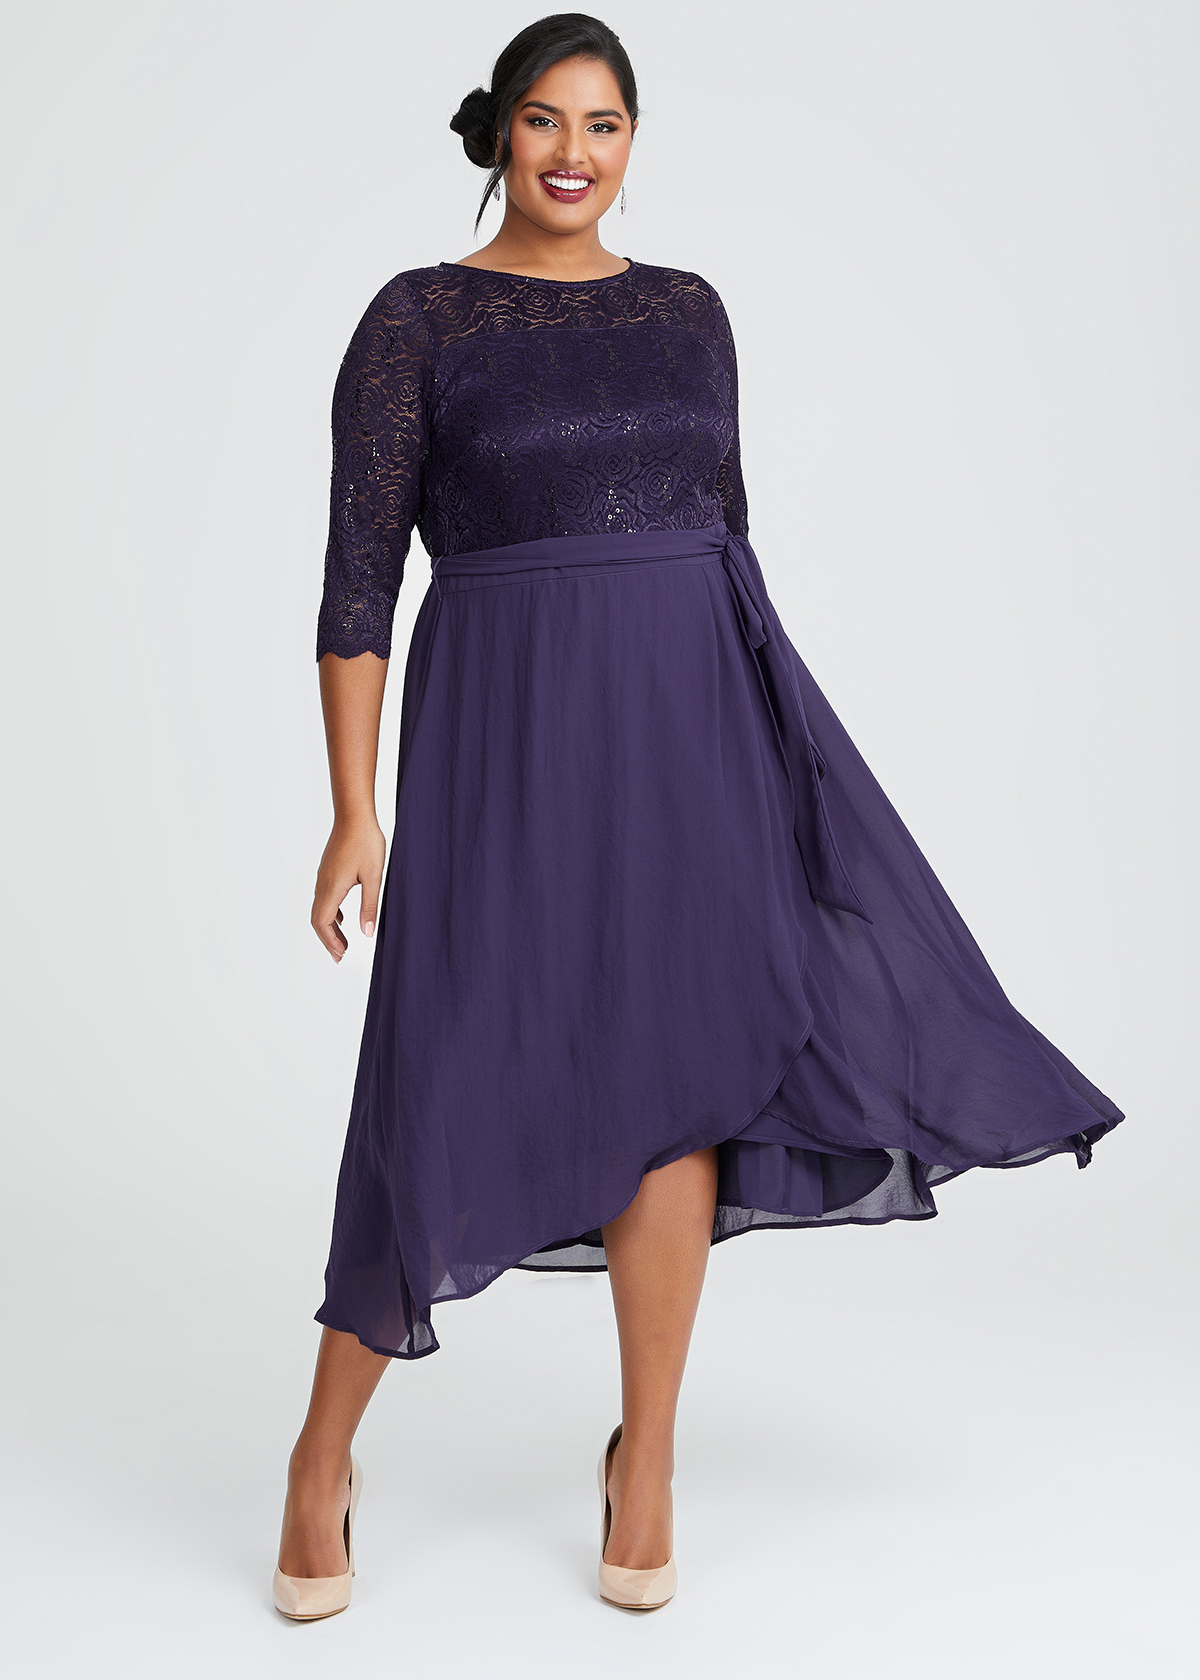 Shop Plus Size Evie Lace & Chiffon Dress in Purple | Sizes 12-30 ...